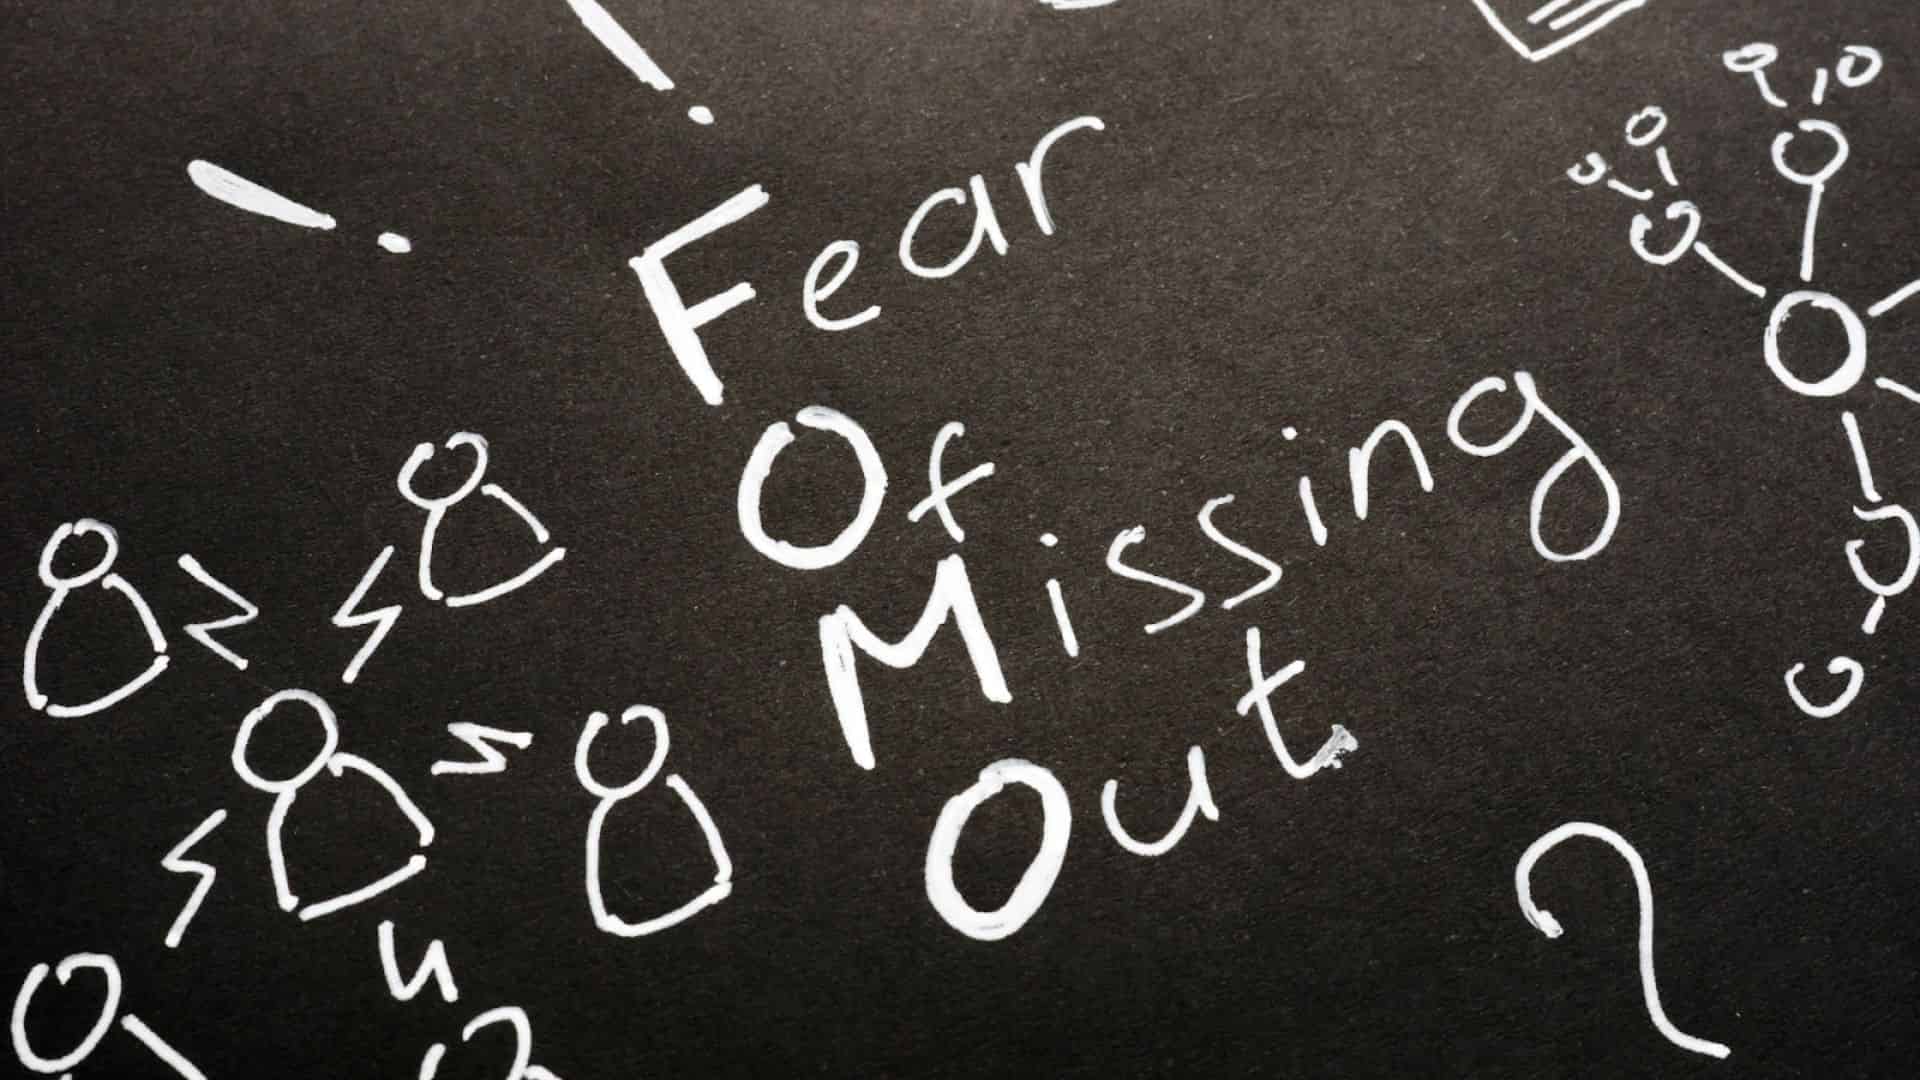 Sebuah tulisan dan gambar dengan style chalkboard bertuliskan Fear of Missing Out